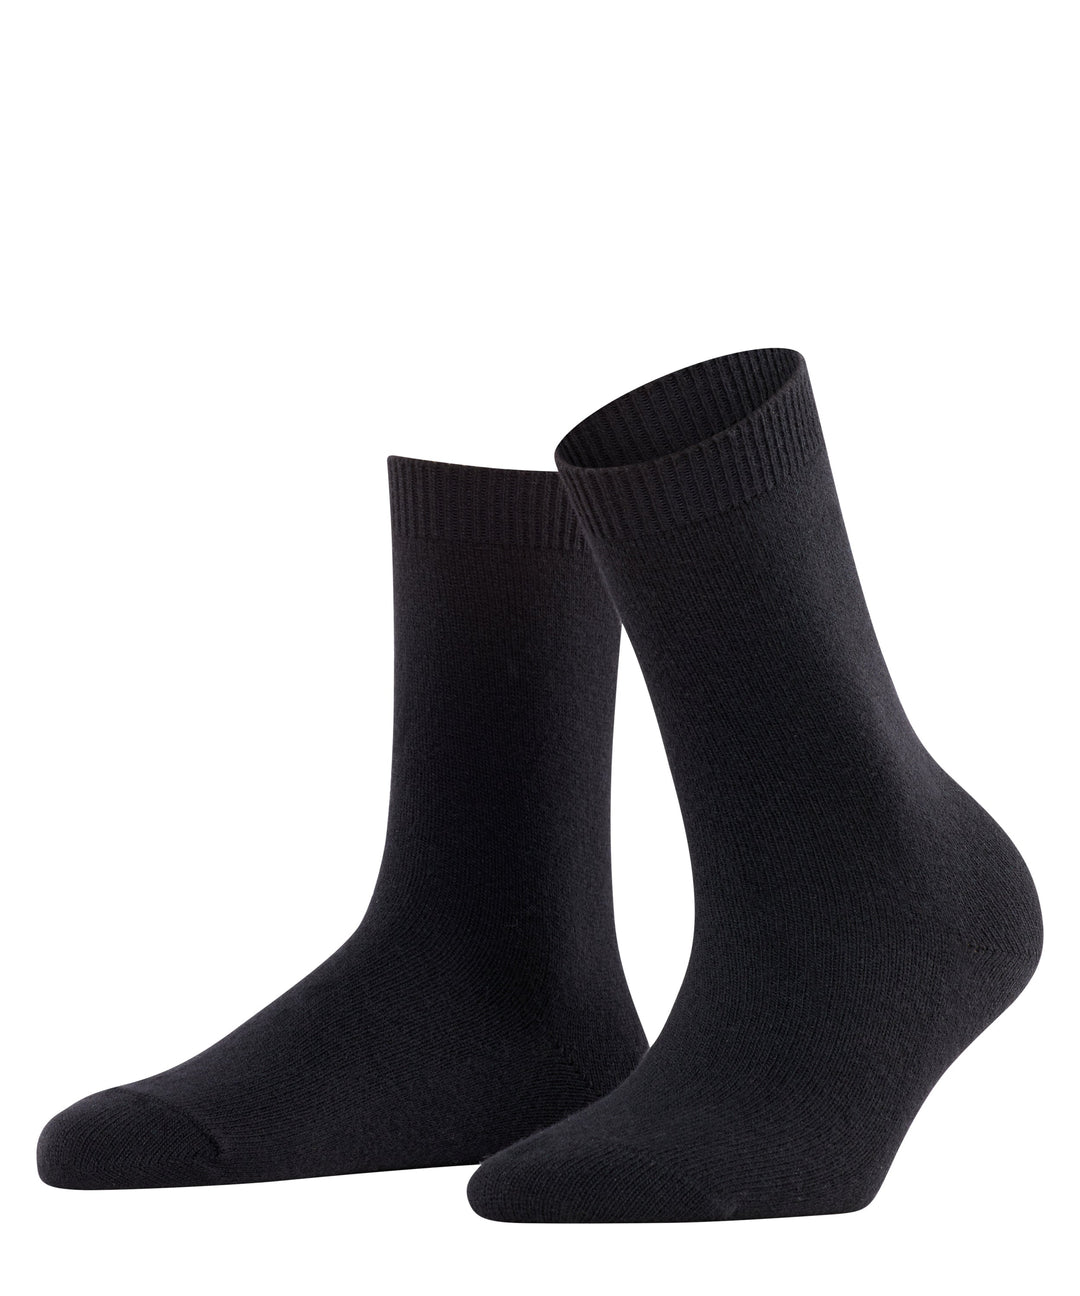 Falke Socks 5/7.5 / Black Cosy Wool Women Socks